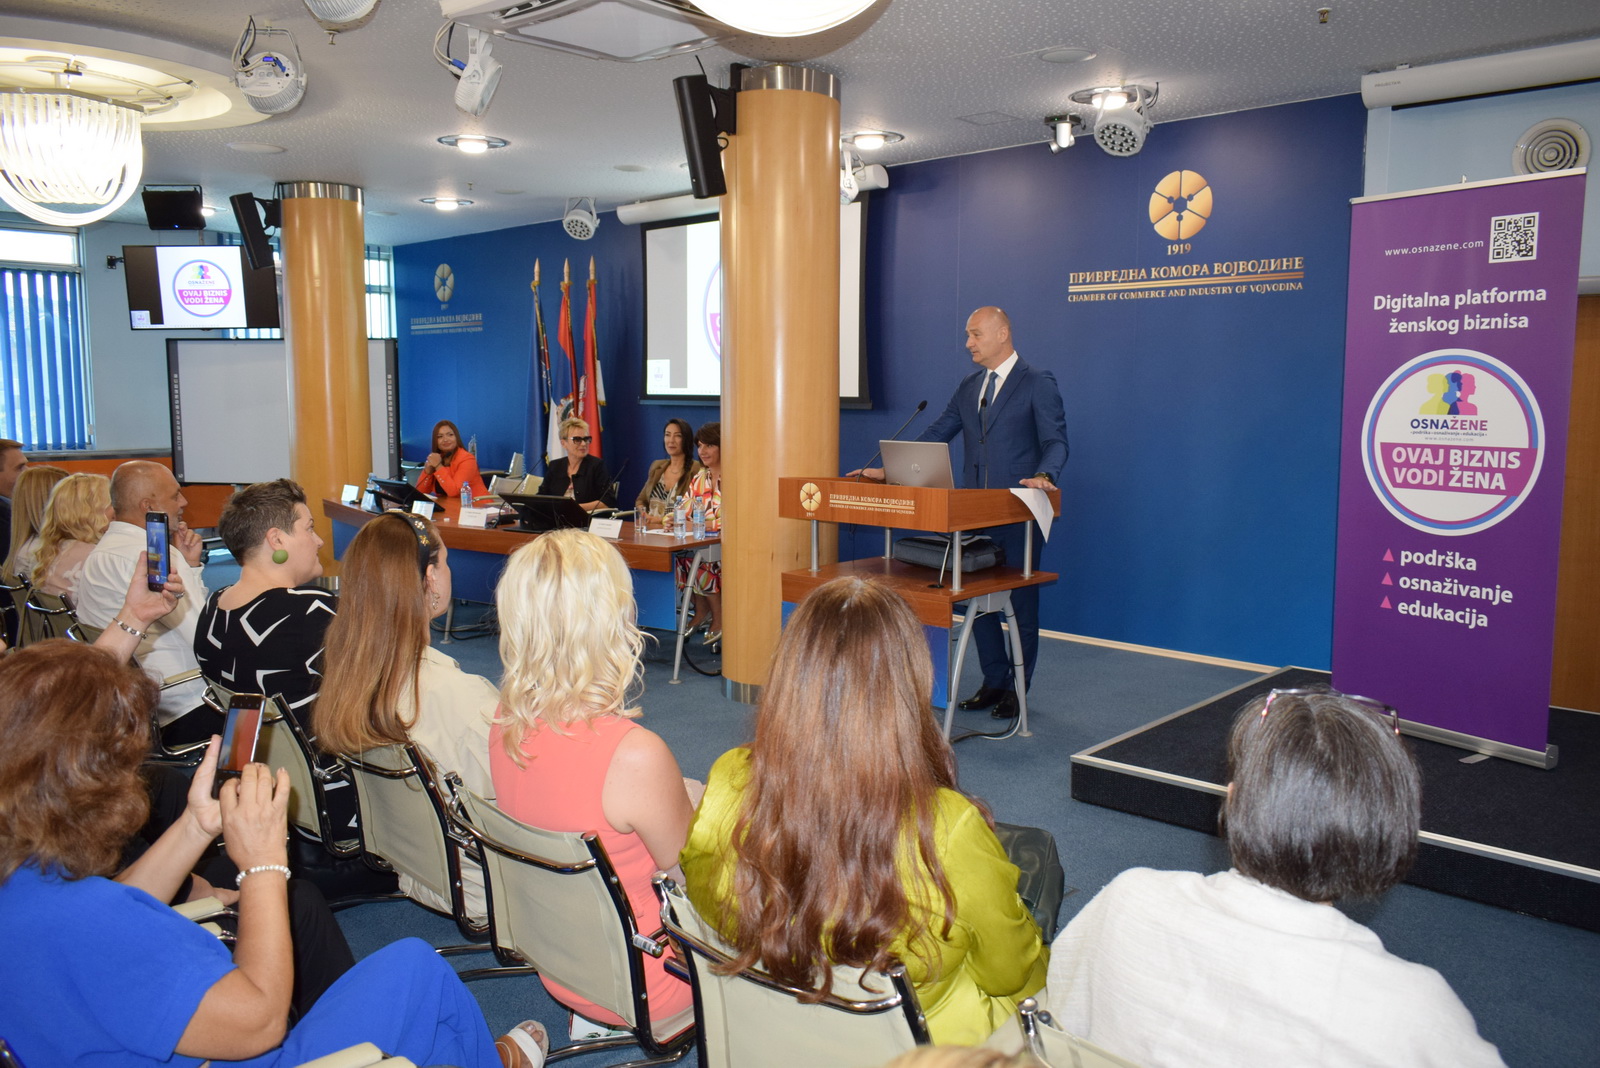 Представљена прва платформа женског бизниса у Србији и региону